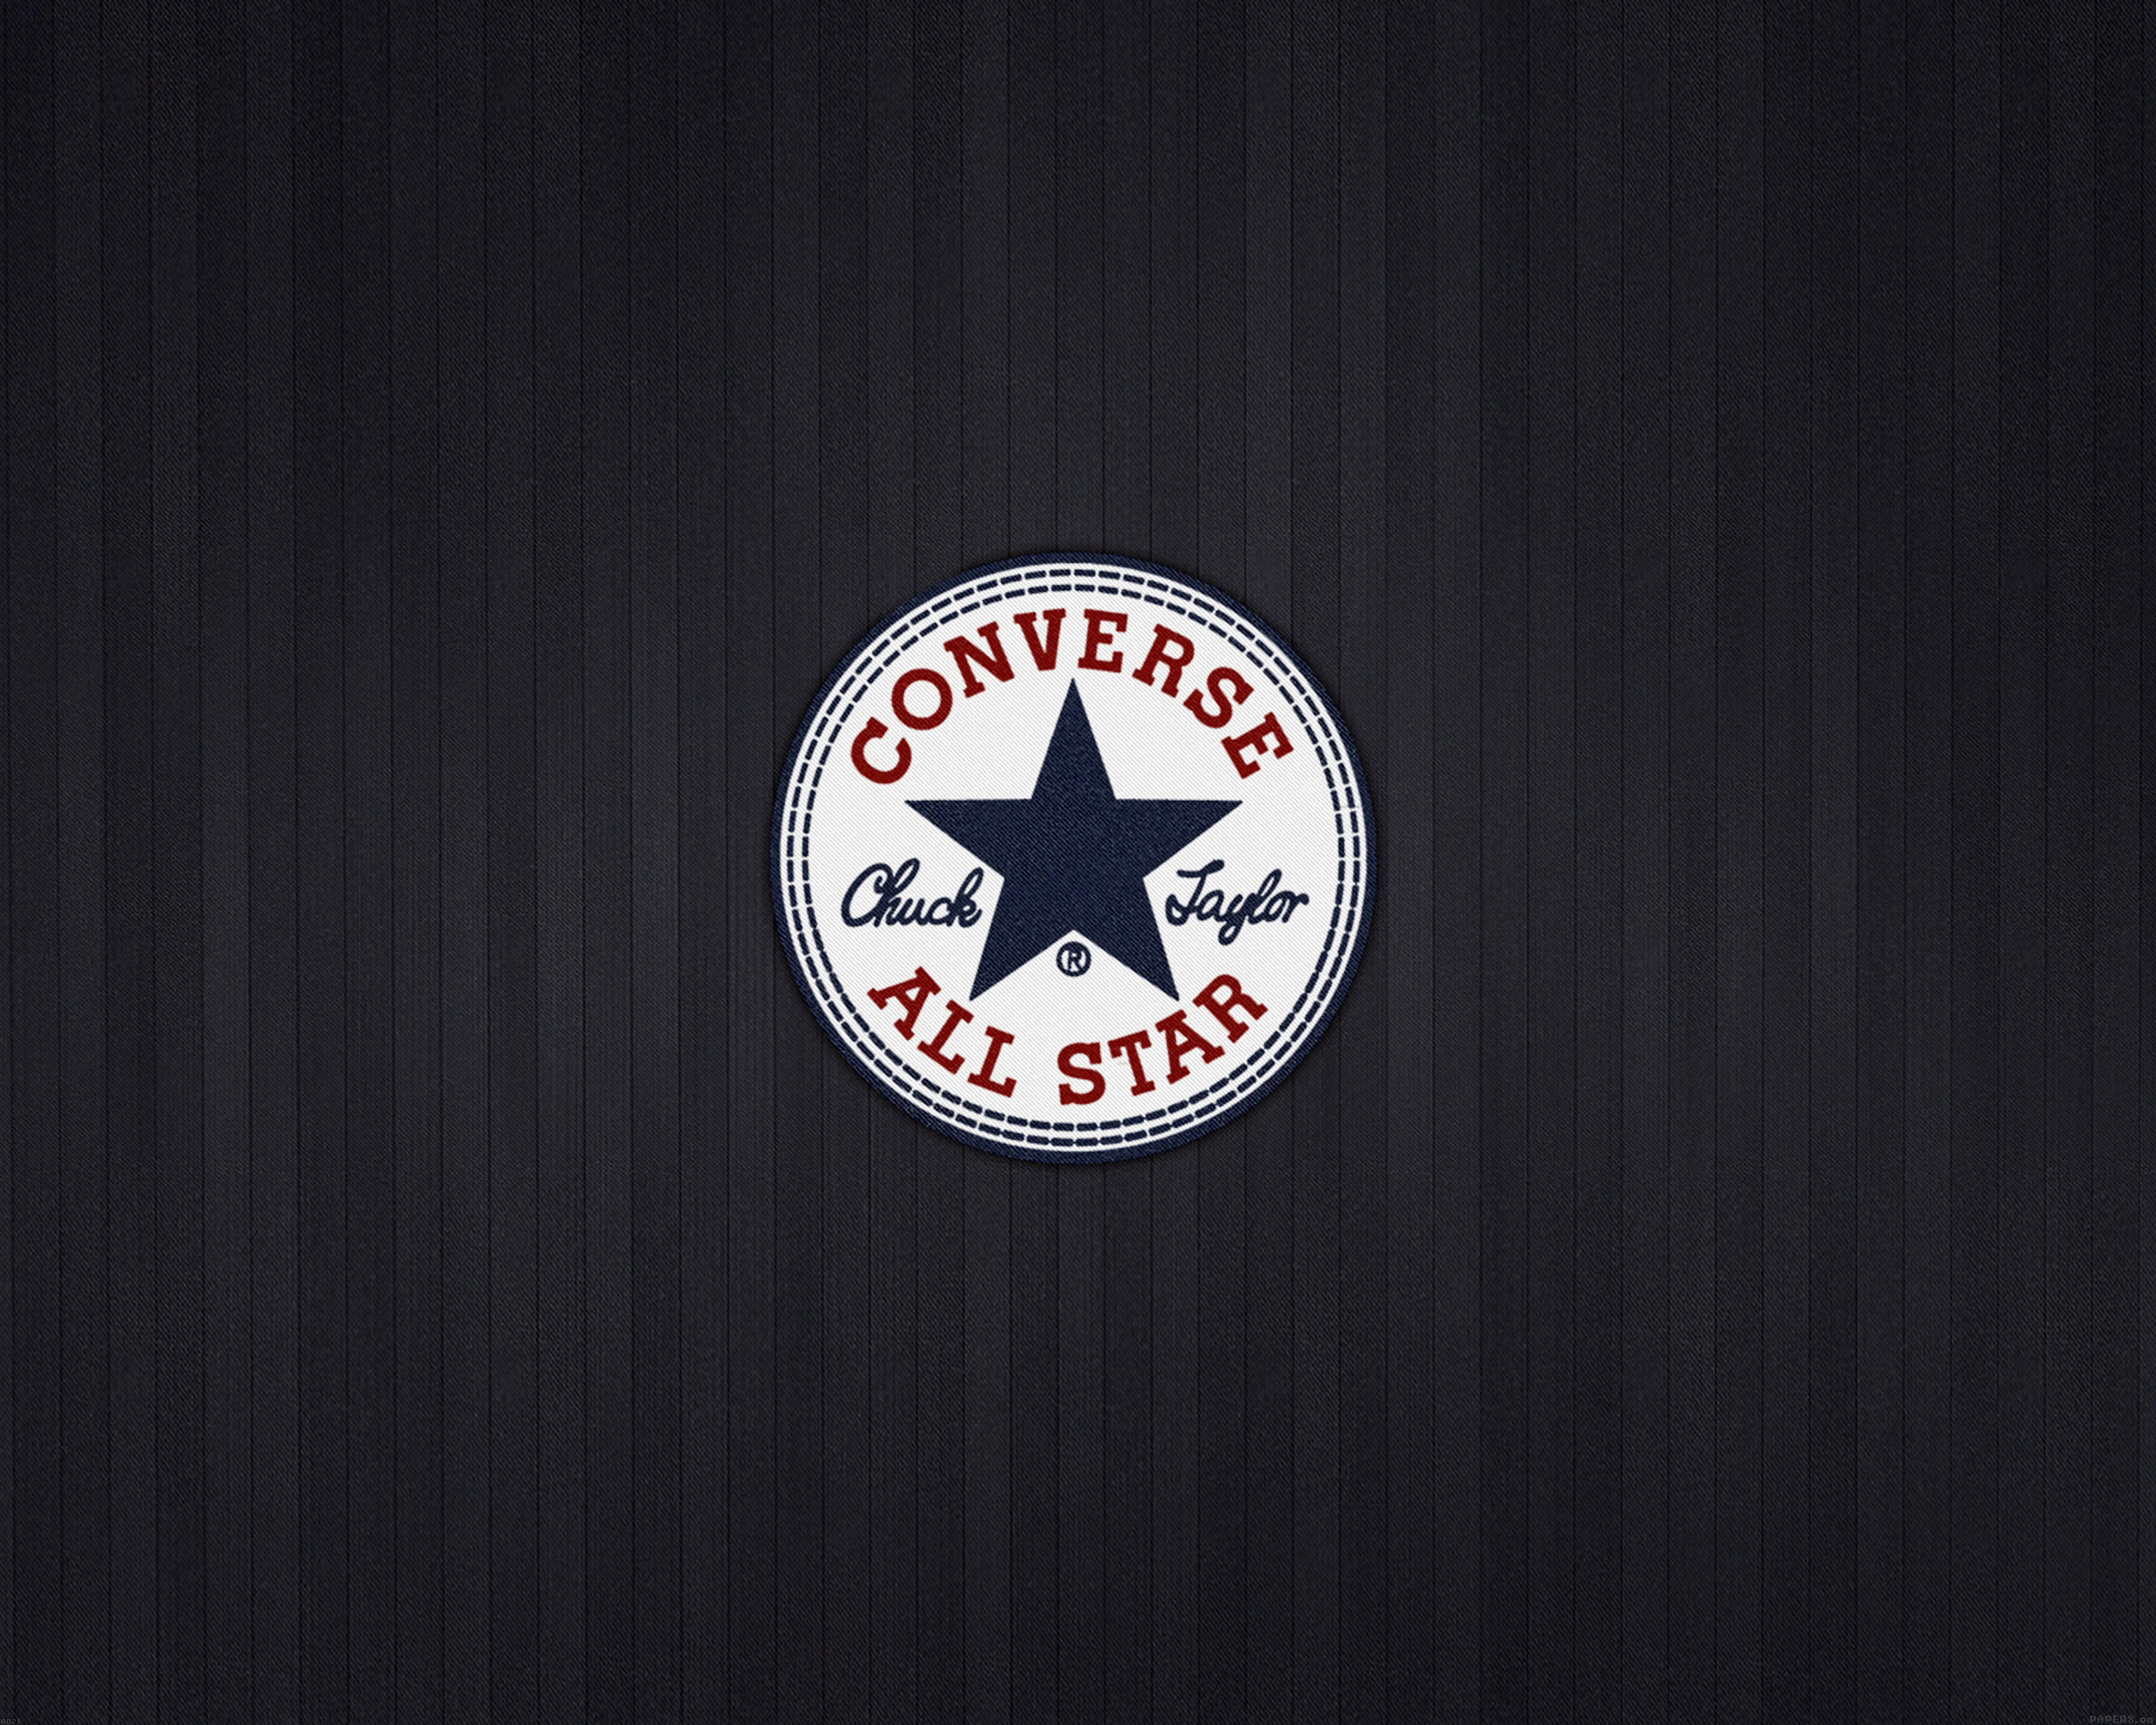 converse all star wallpaper,logo,emblem,font,symbol,flag